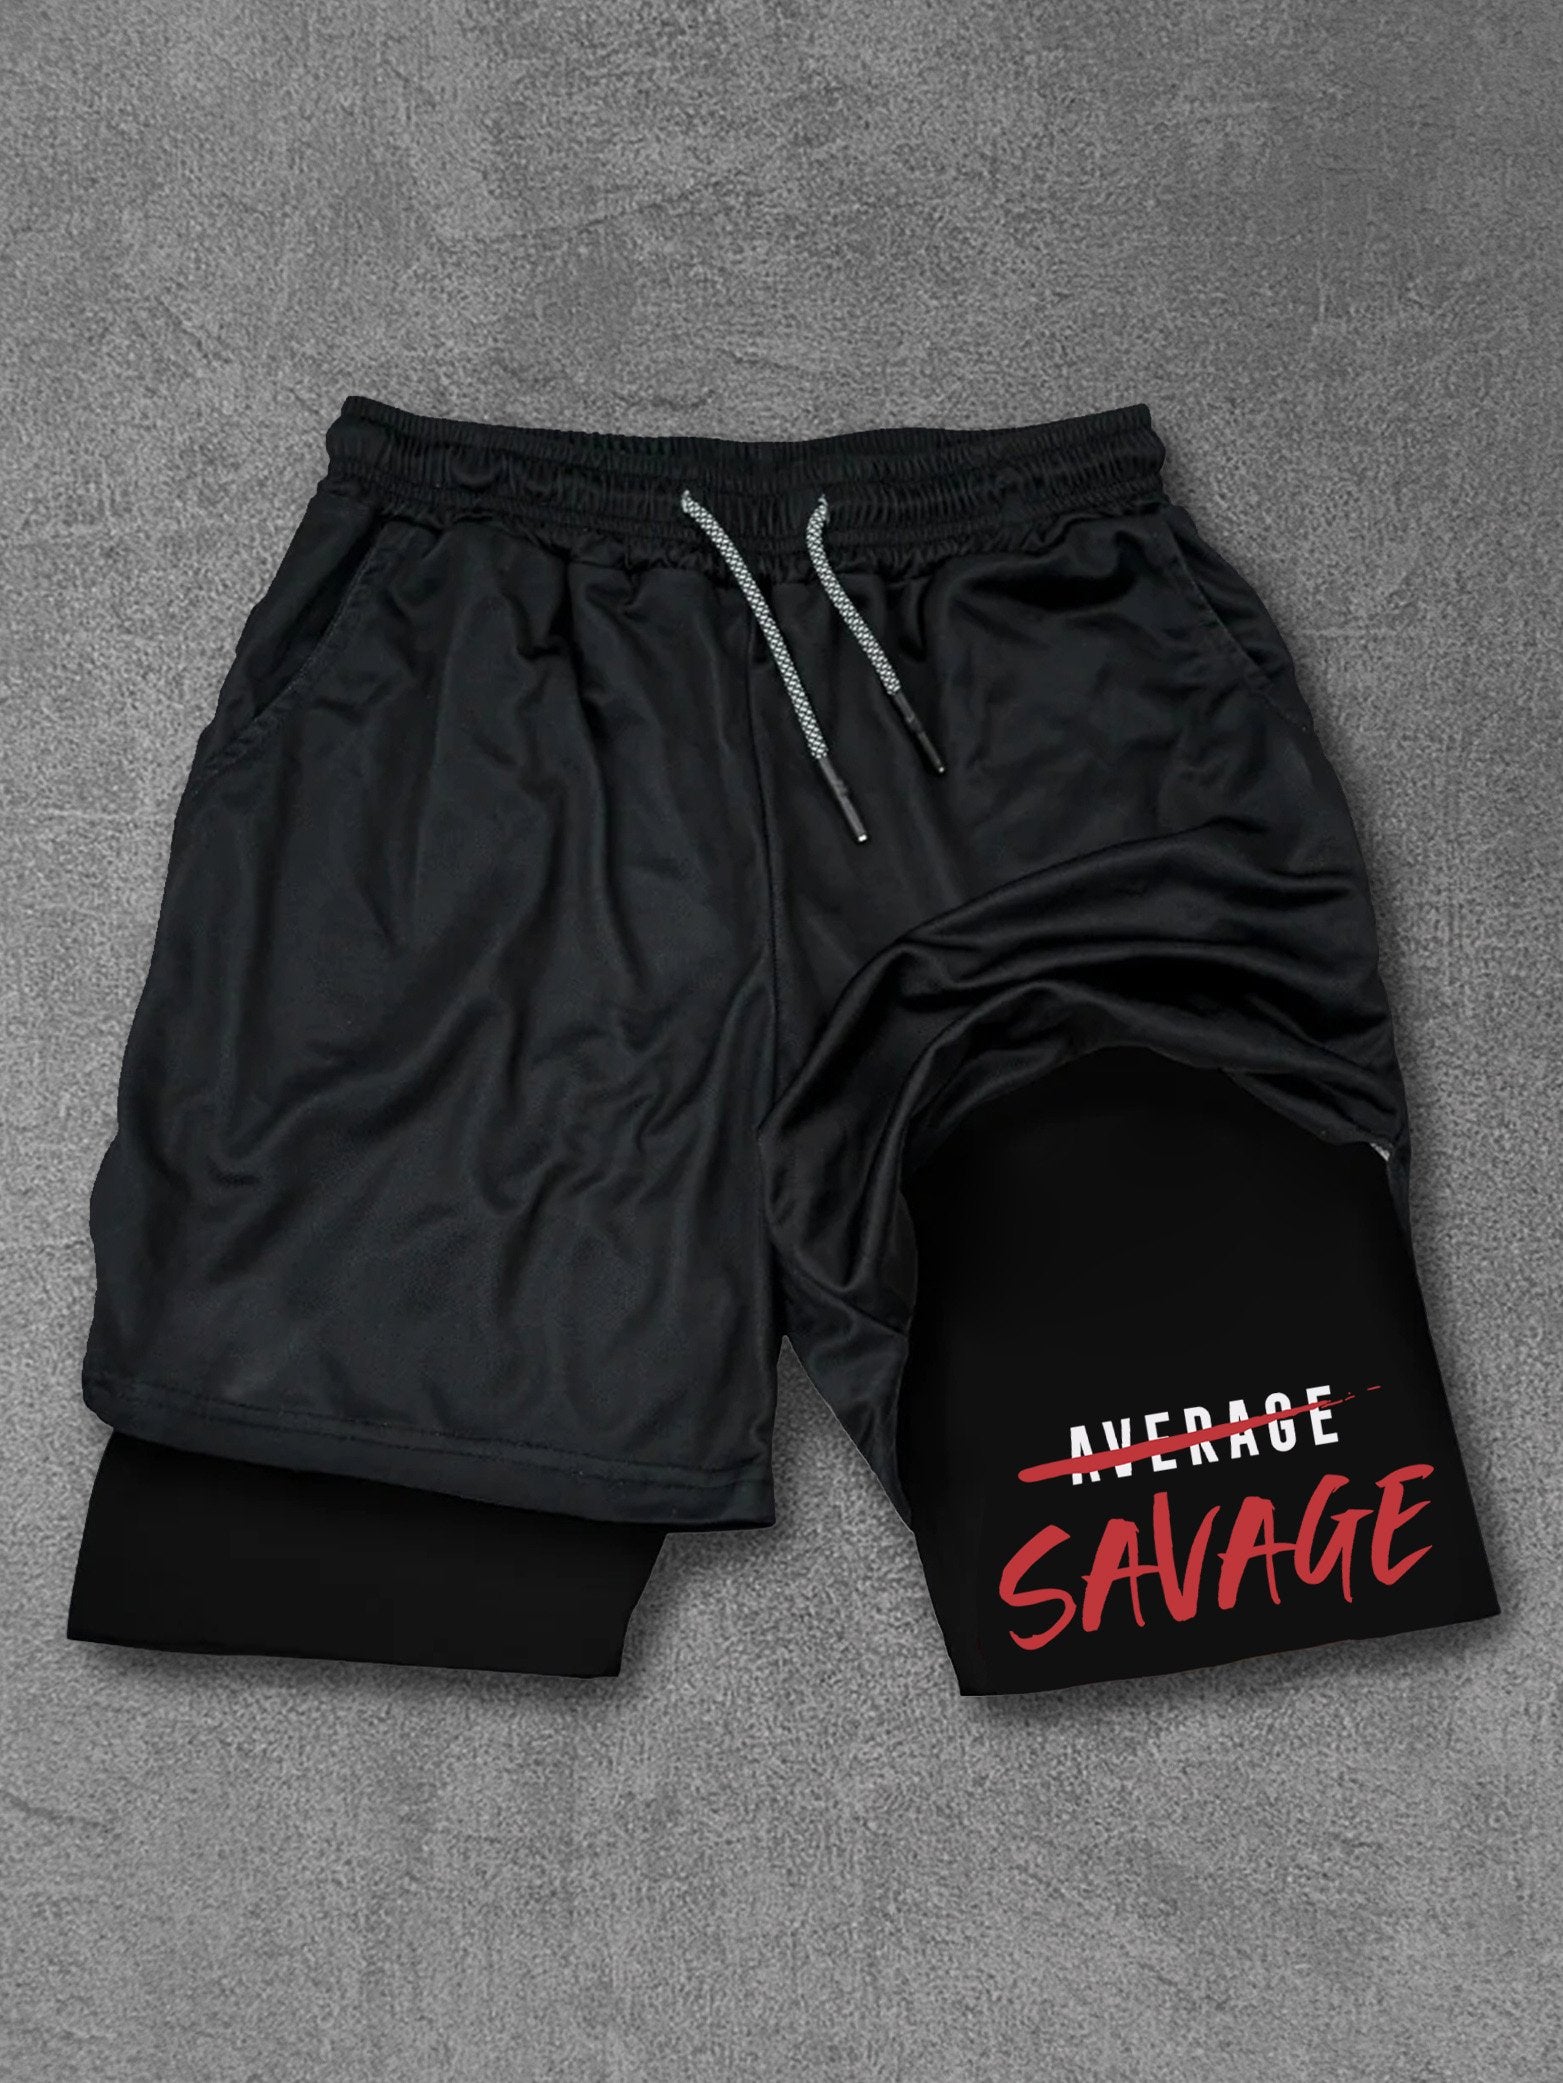 savage not average Performance Training Shorts